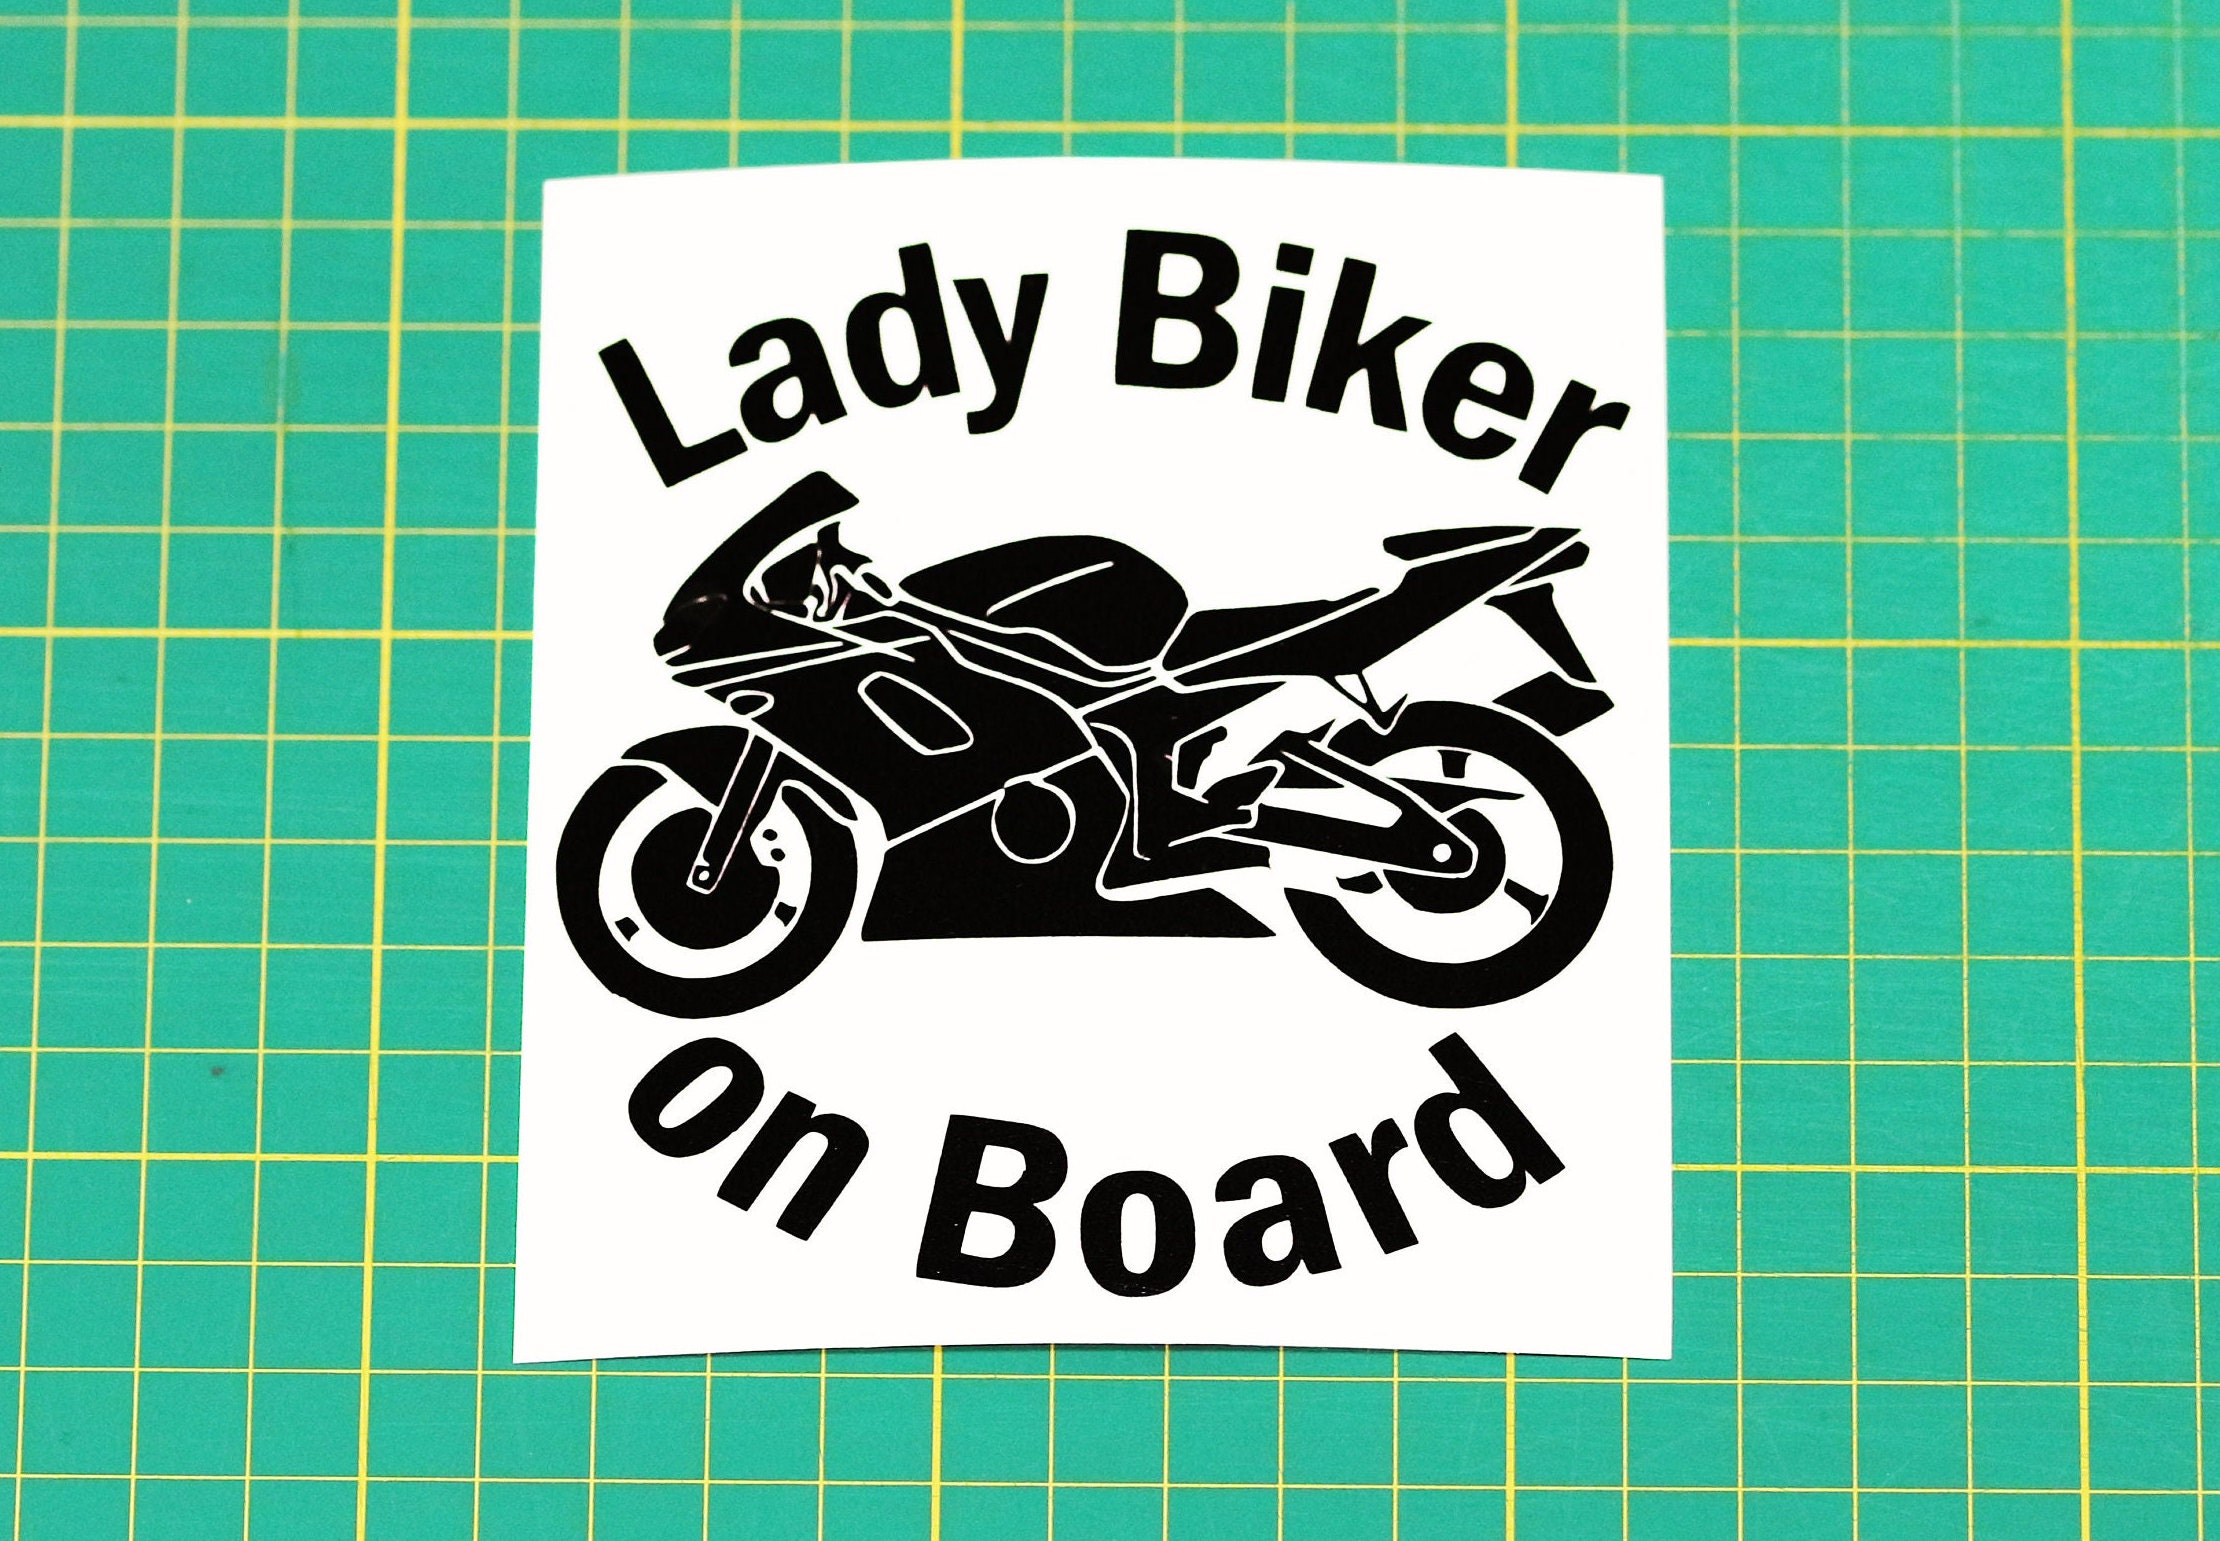 Motorrad Aufkleber Gas Tank Aufkleber / Skin Lady Rider Rose Vinyl Fahrrad  Aufkleber 1 Stück - .de